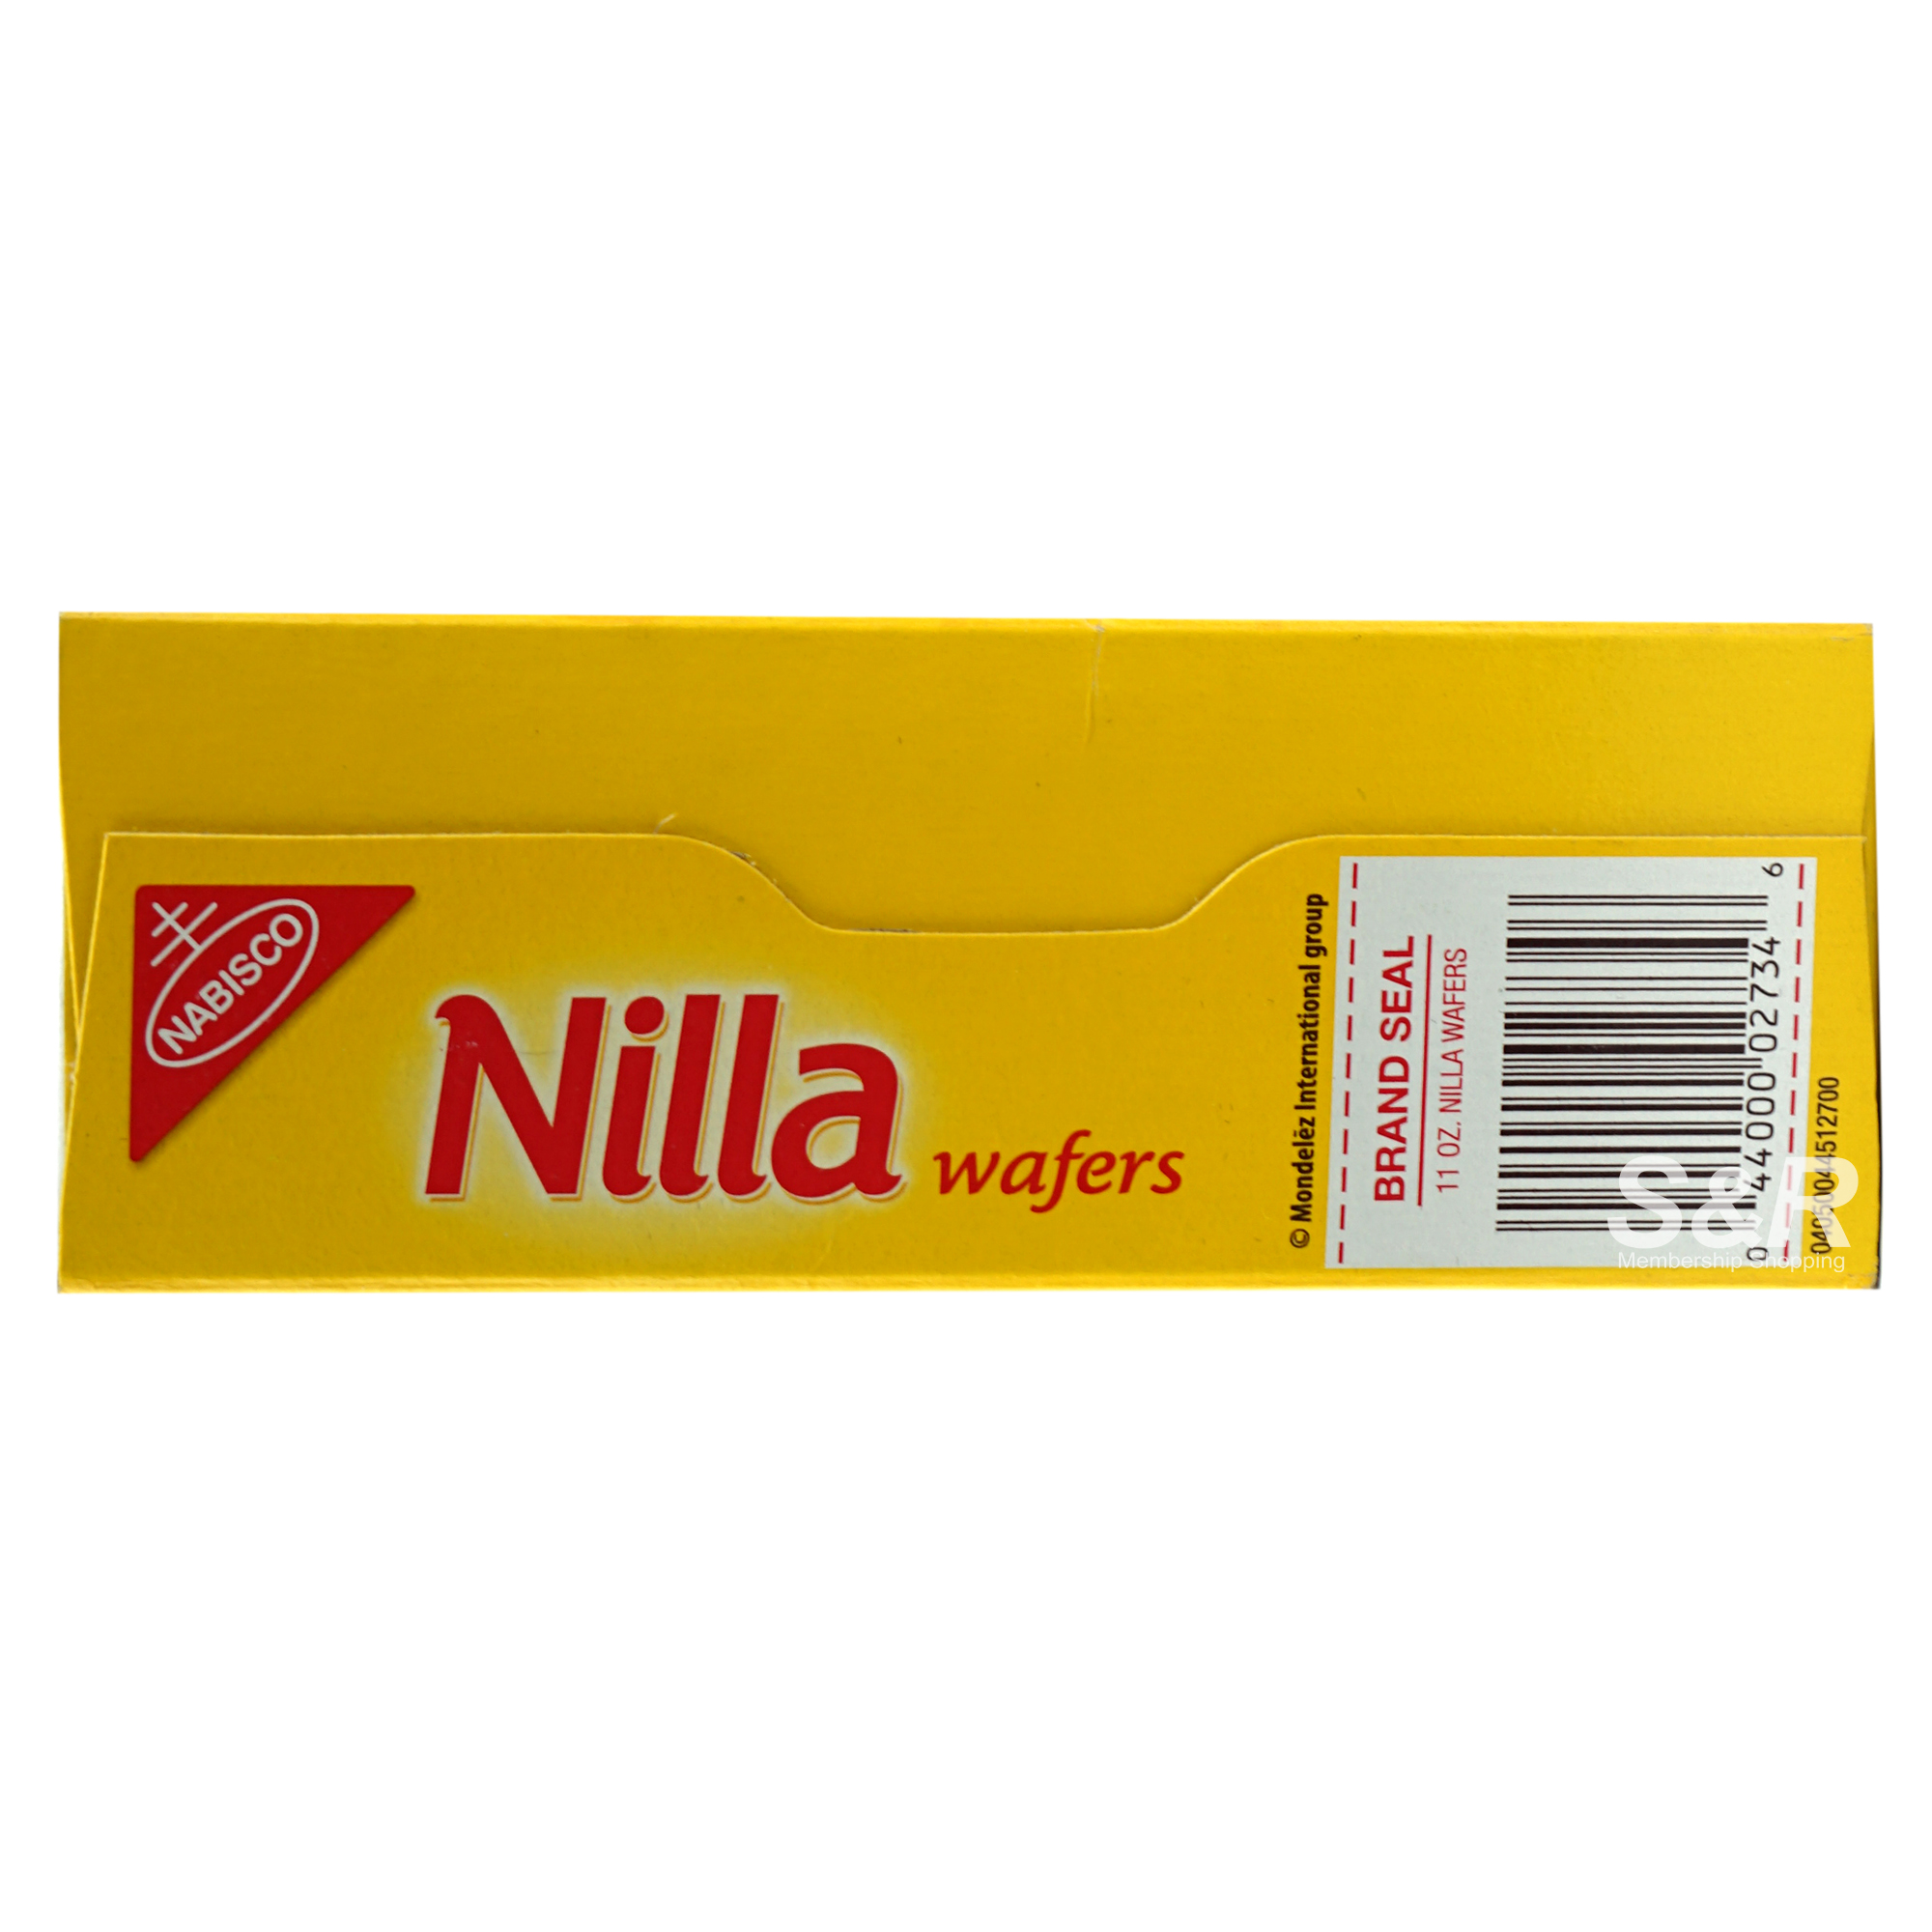 Nilla Wafers